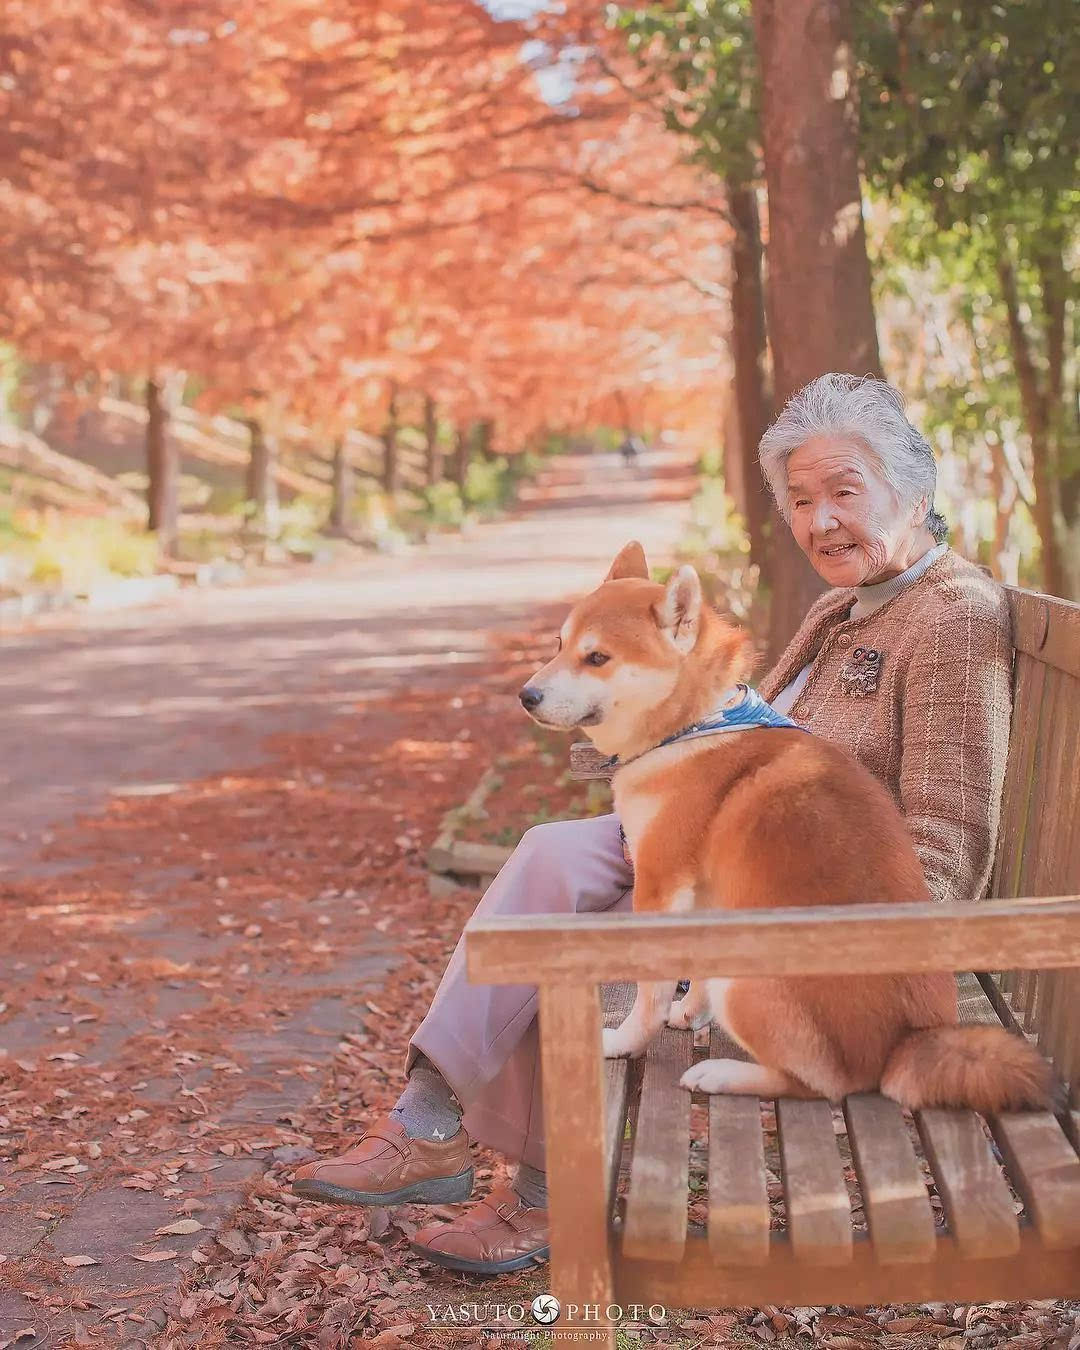 85岁奶奶和柴犬一张照片,暖哭网友:岁月静好,愿时光不老